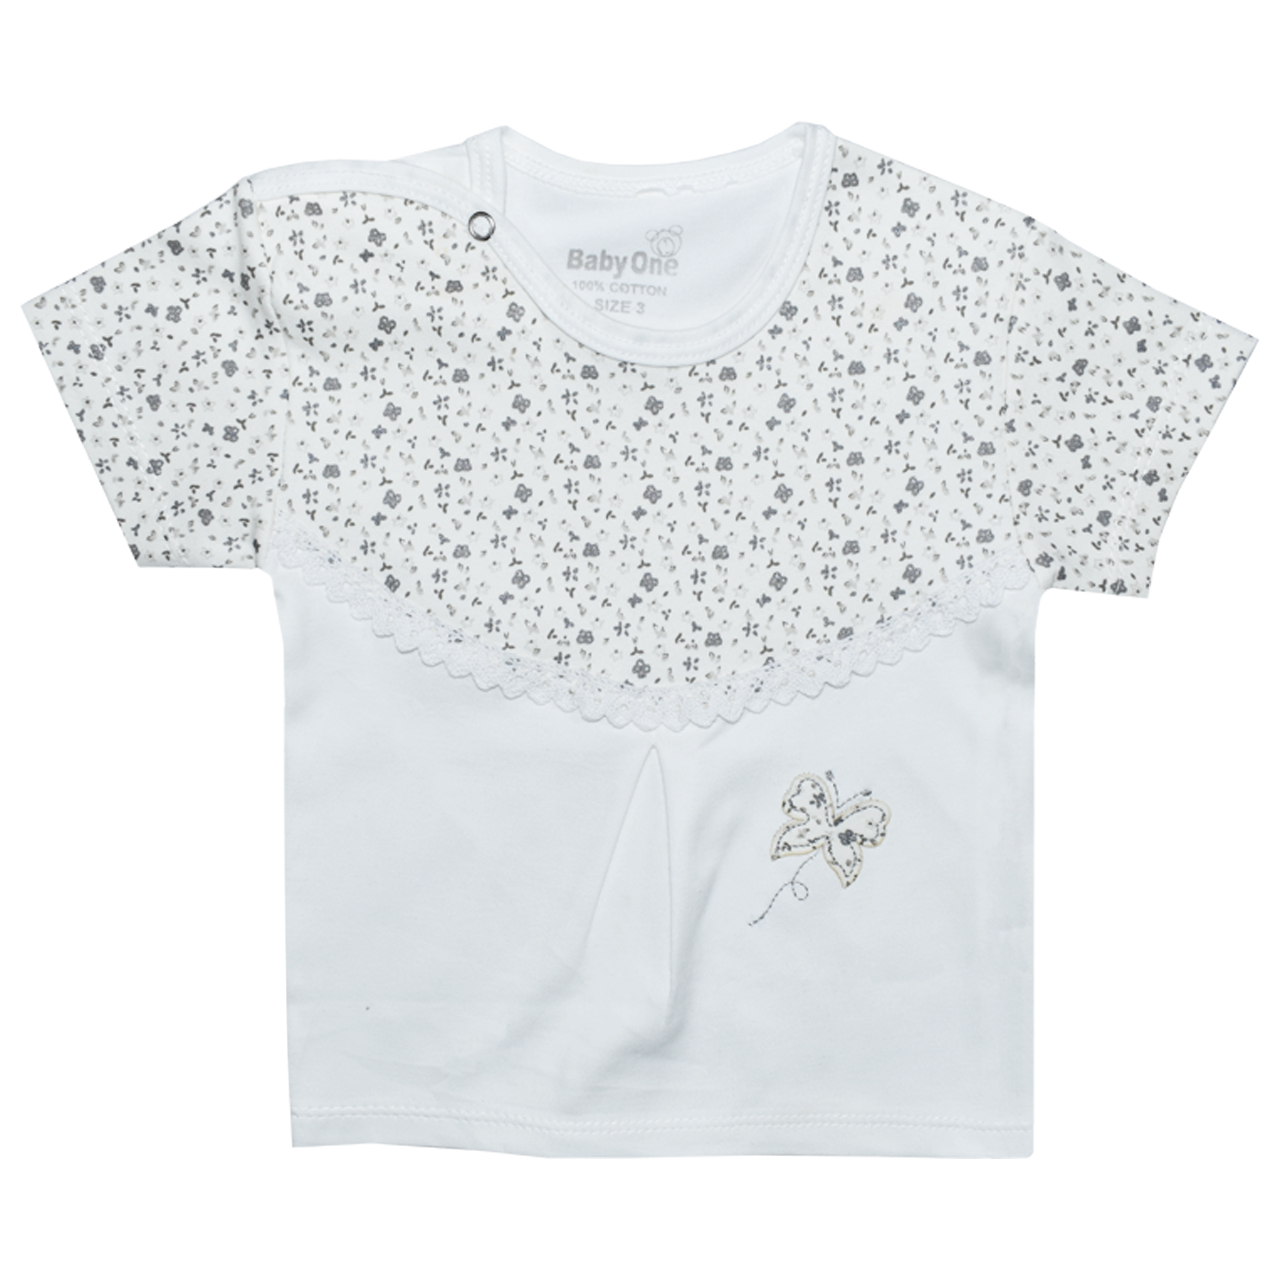 ست تی شرت و شلوار نوزادی بی بی وان مدل پروانه کد 4 -  - 3